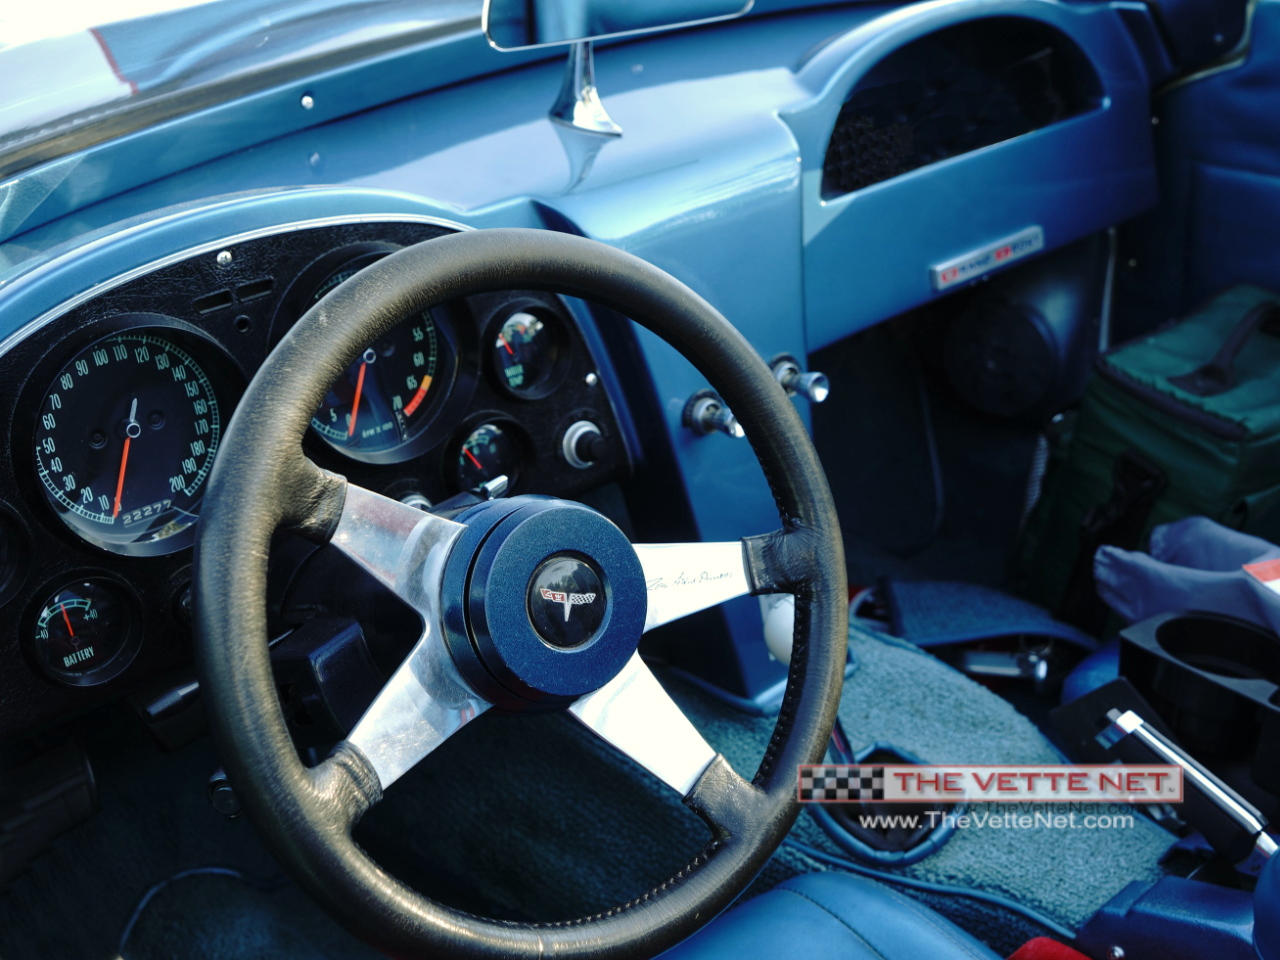 1964 Corvette Convertible White with Blue Stripe